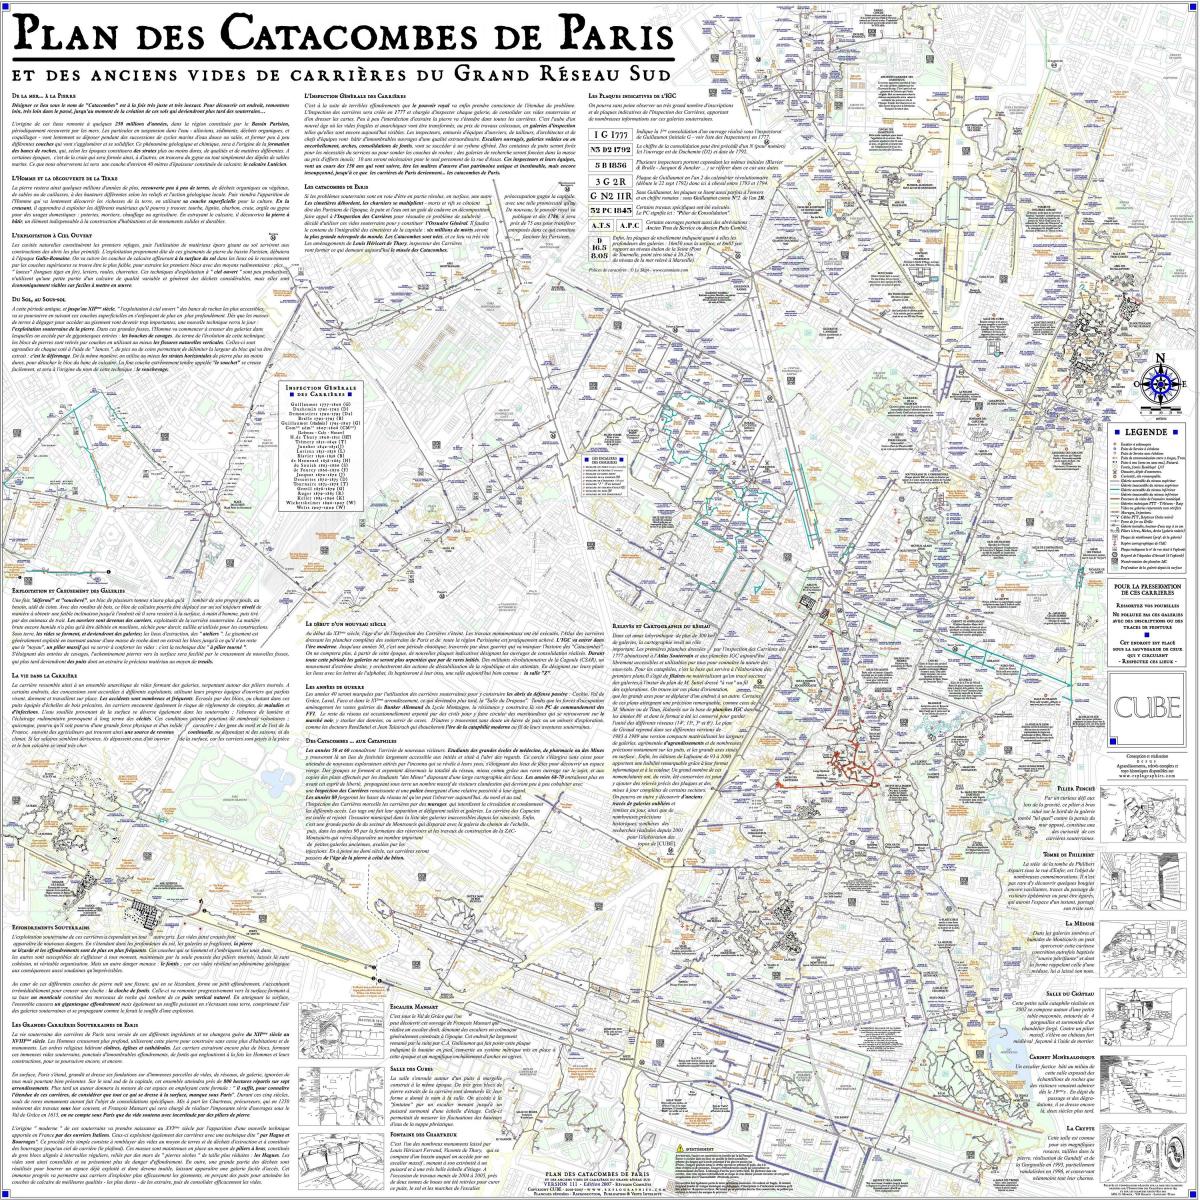 Mappa delle catacombe di Parigi